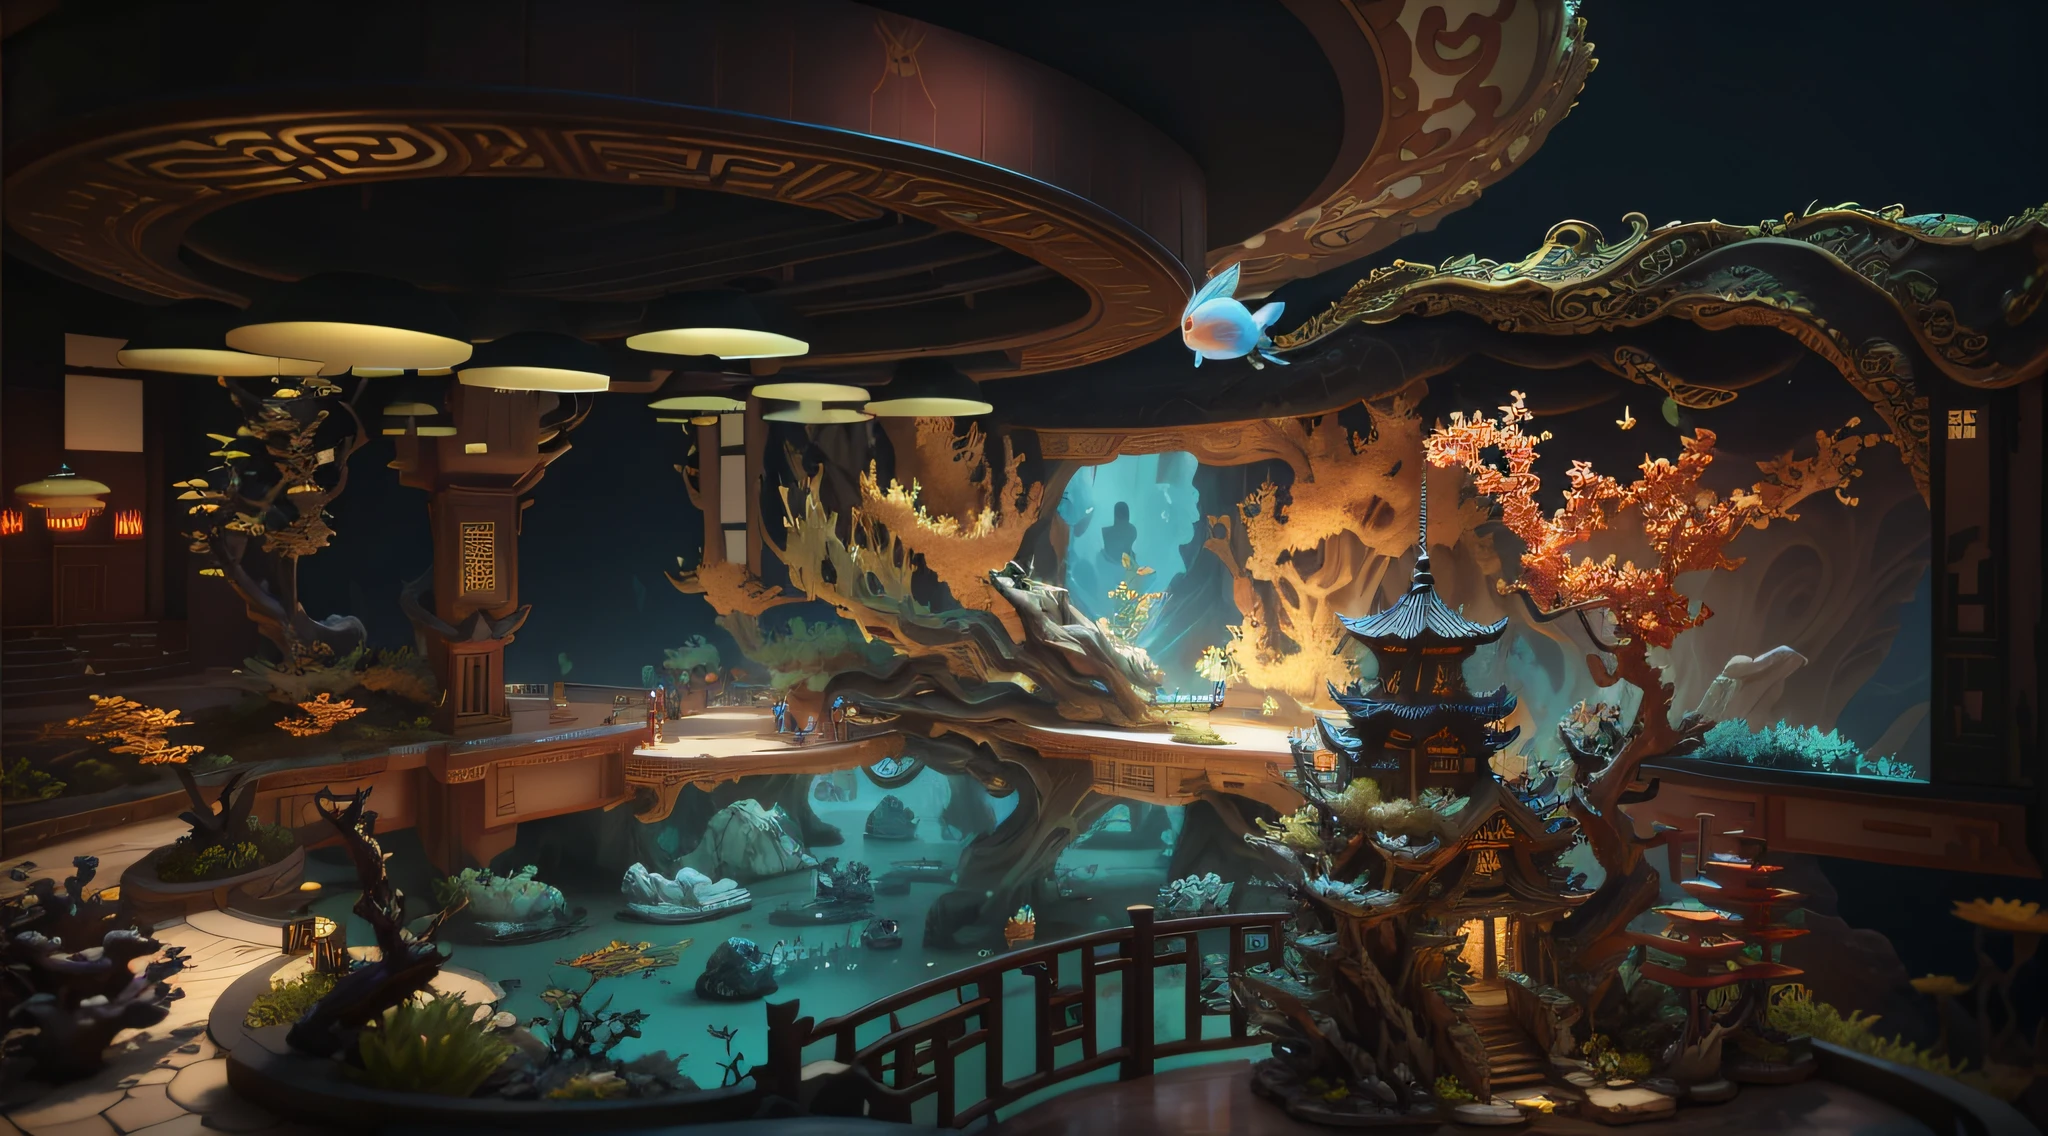 Es gibt ein großes Aquarium，Es gibt viel Wasser und Pflanzen im Inneren, Die wirbelnden Gärten der Kaiserin, Wunderschöne Darstellung der Tang-Dynastie, hochdetaillierte, surreale visuelle Effekte, komplizierter, verzierter Anime-CGI-Stil, Japanischer 3-Tage-8K-Ultra-Detaillierter, hochdetaillierte VFX-Szene, Verfügt über einen Miniatur-Innensee, Chinesische Fantasie, 8k Octane-Rendering im Fantasy-Stil, Unterwassertempel mit Fischen